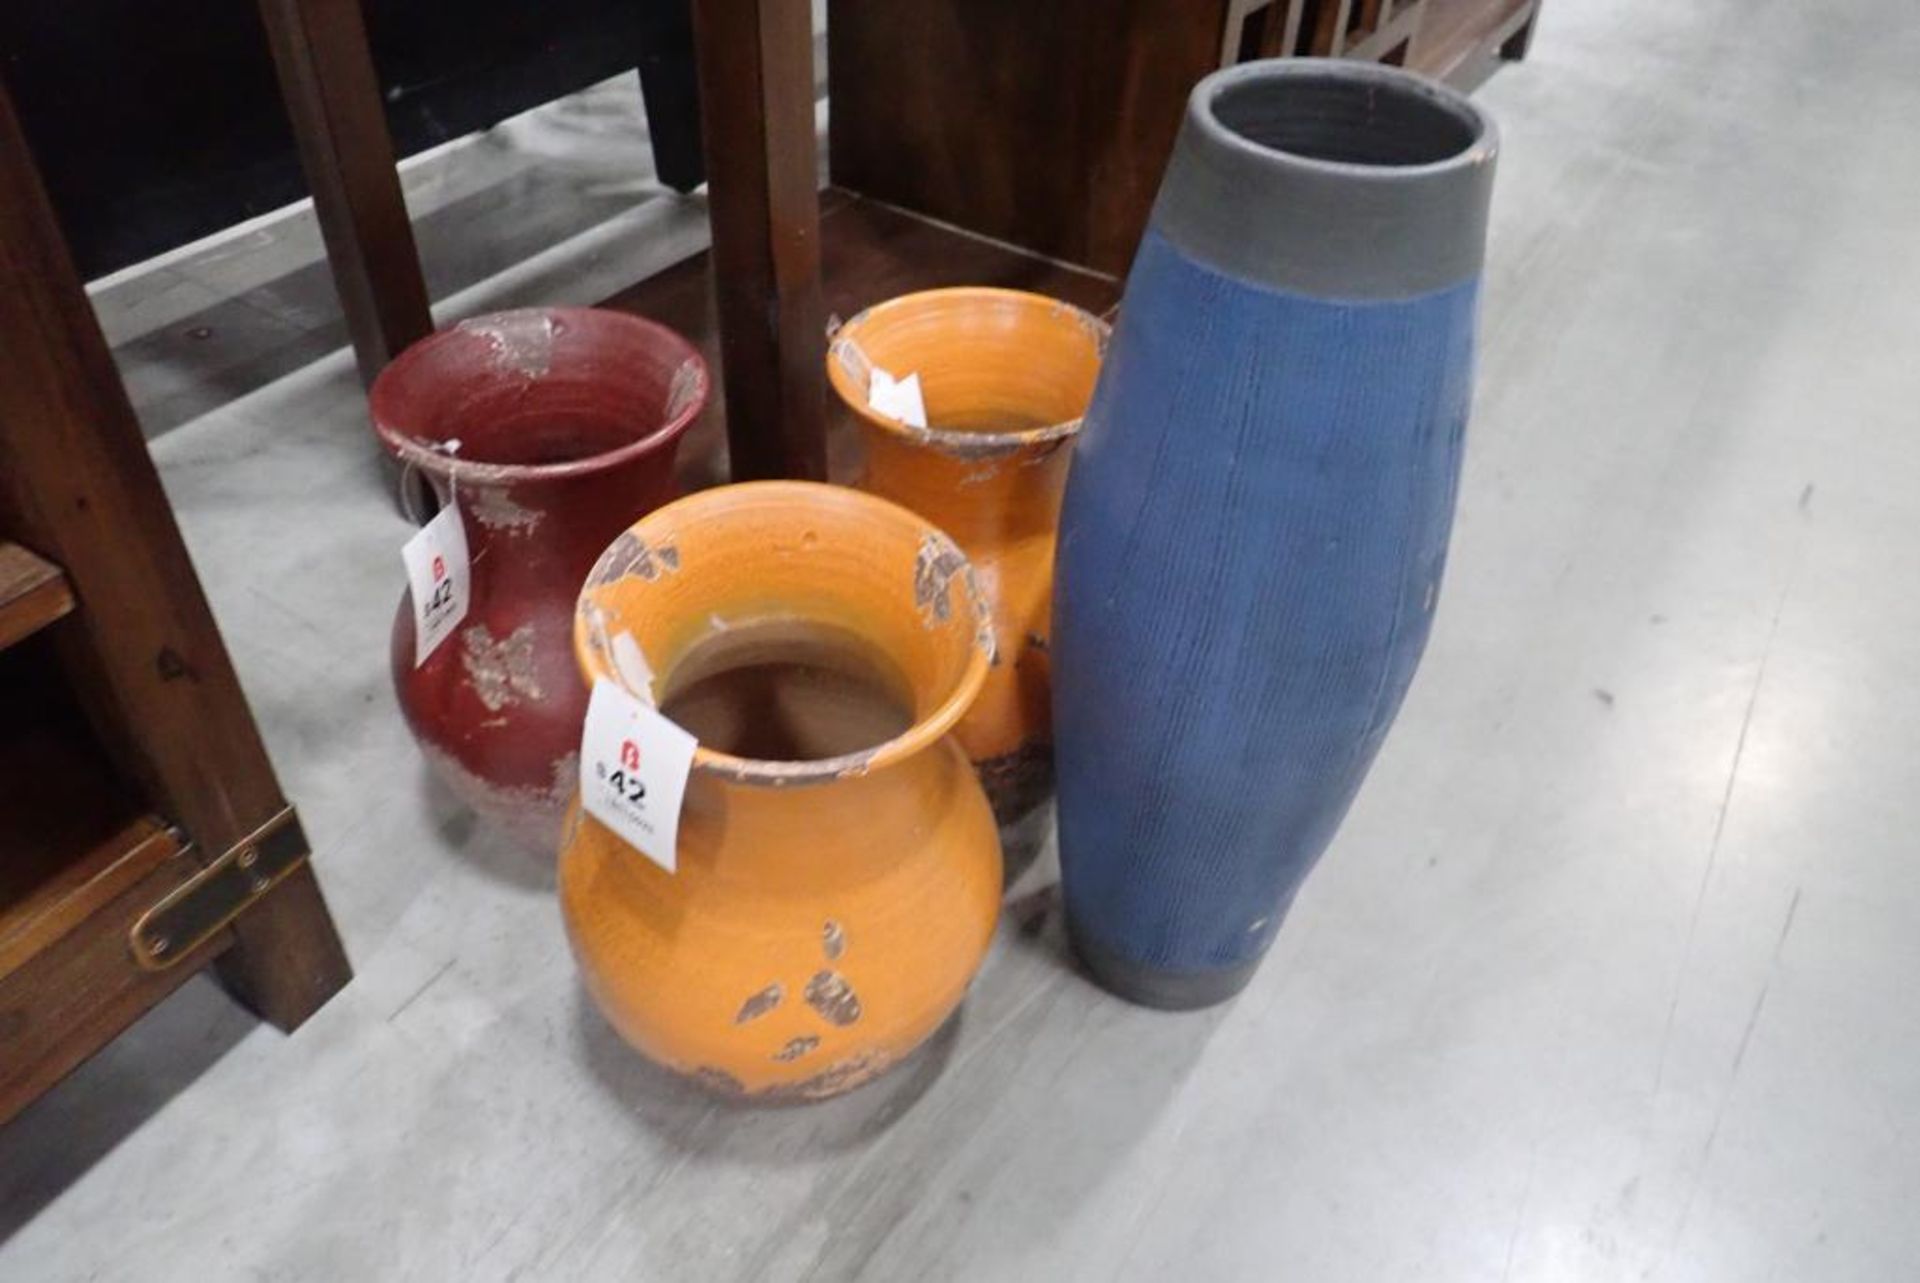 Lot of 4 Asst. Vases.